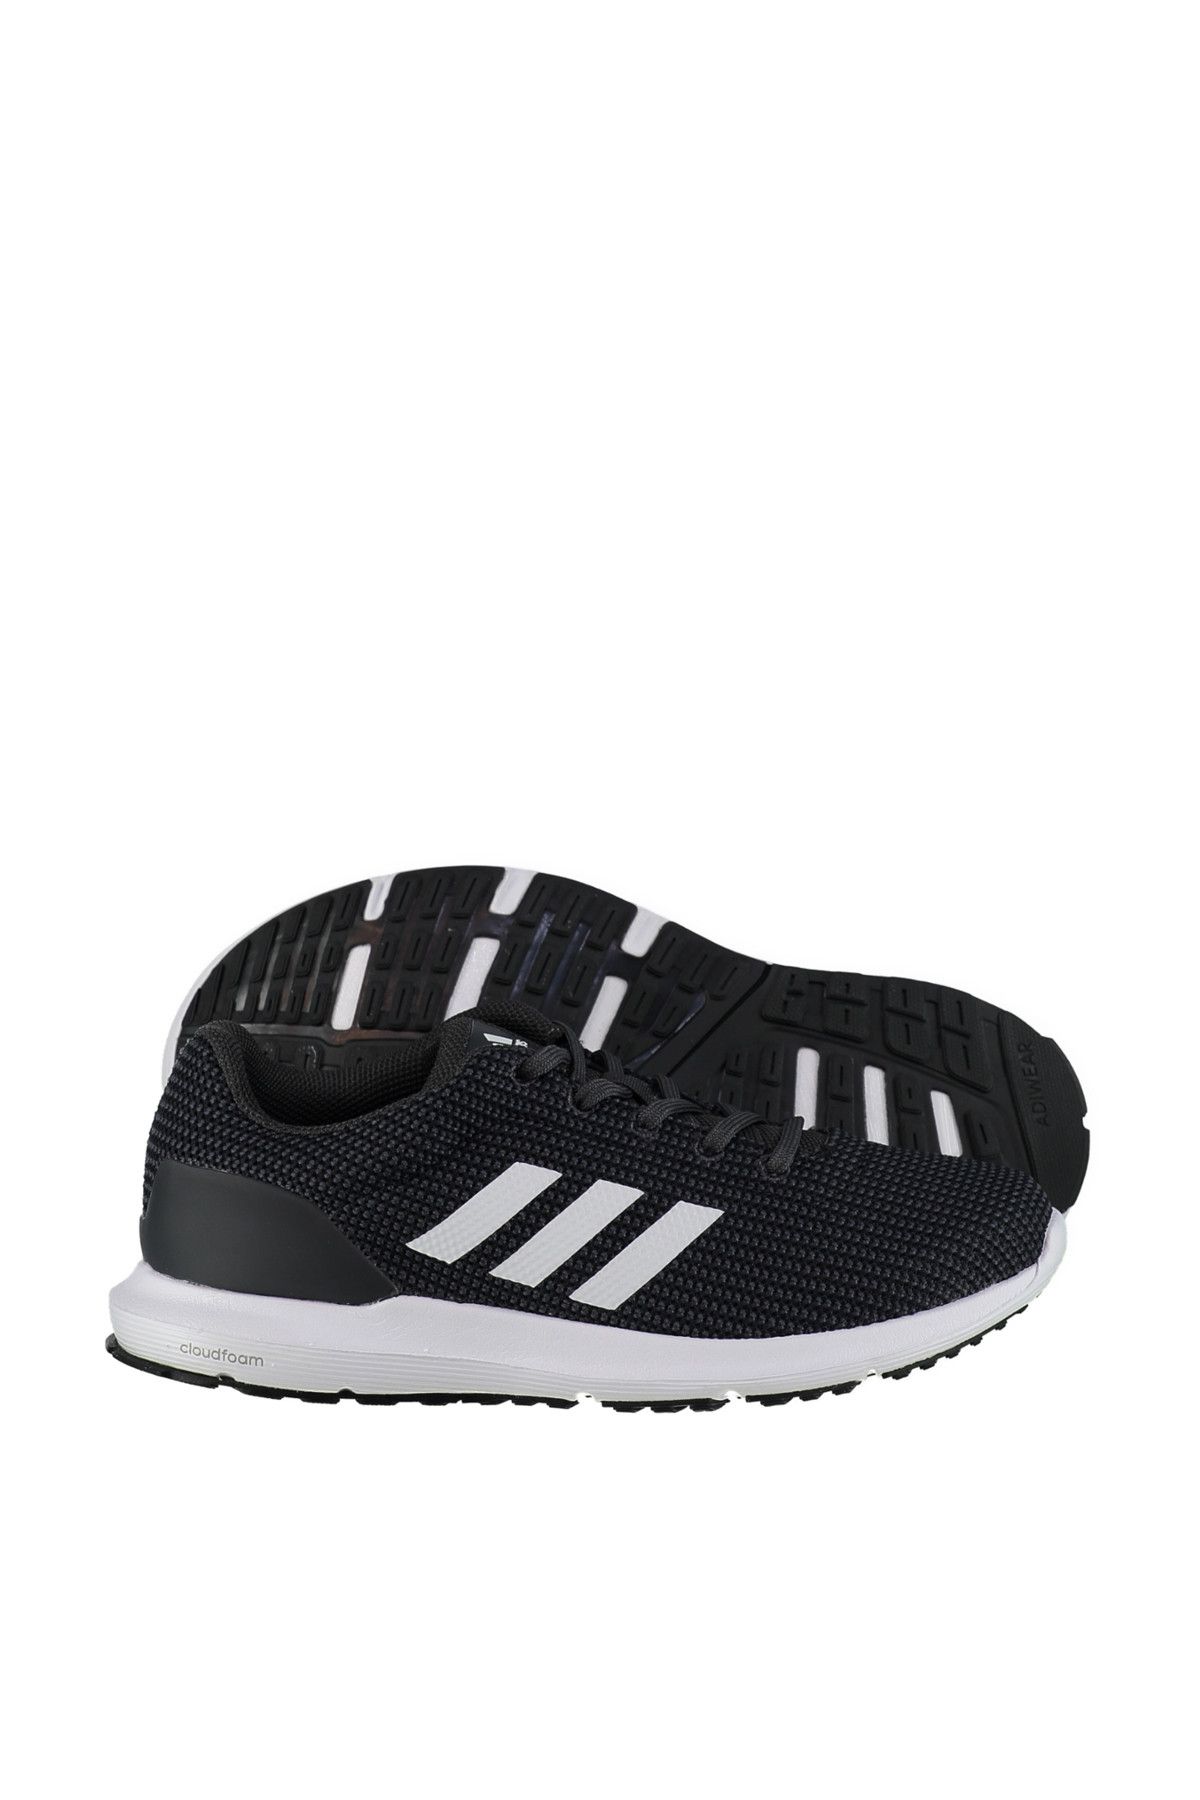 adidas Kadın Koşu Ayakkabı - Cosmic W - BB3377